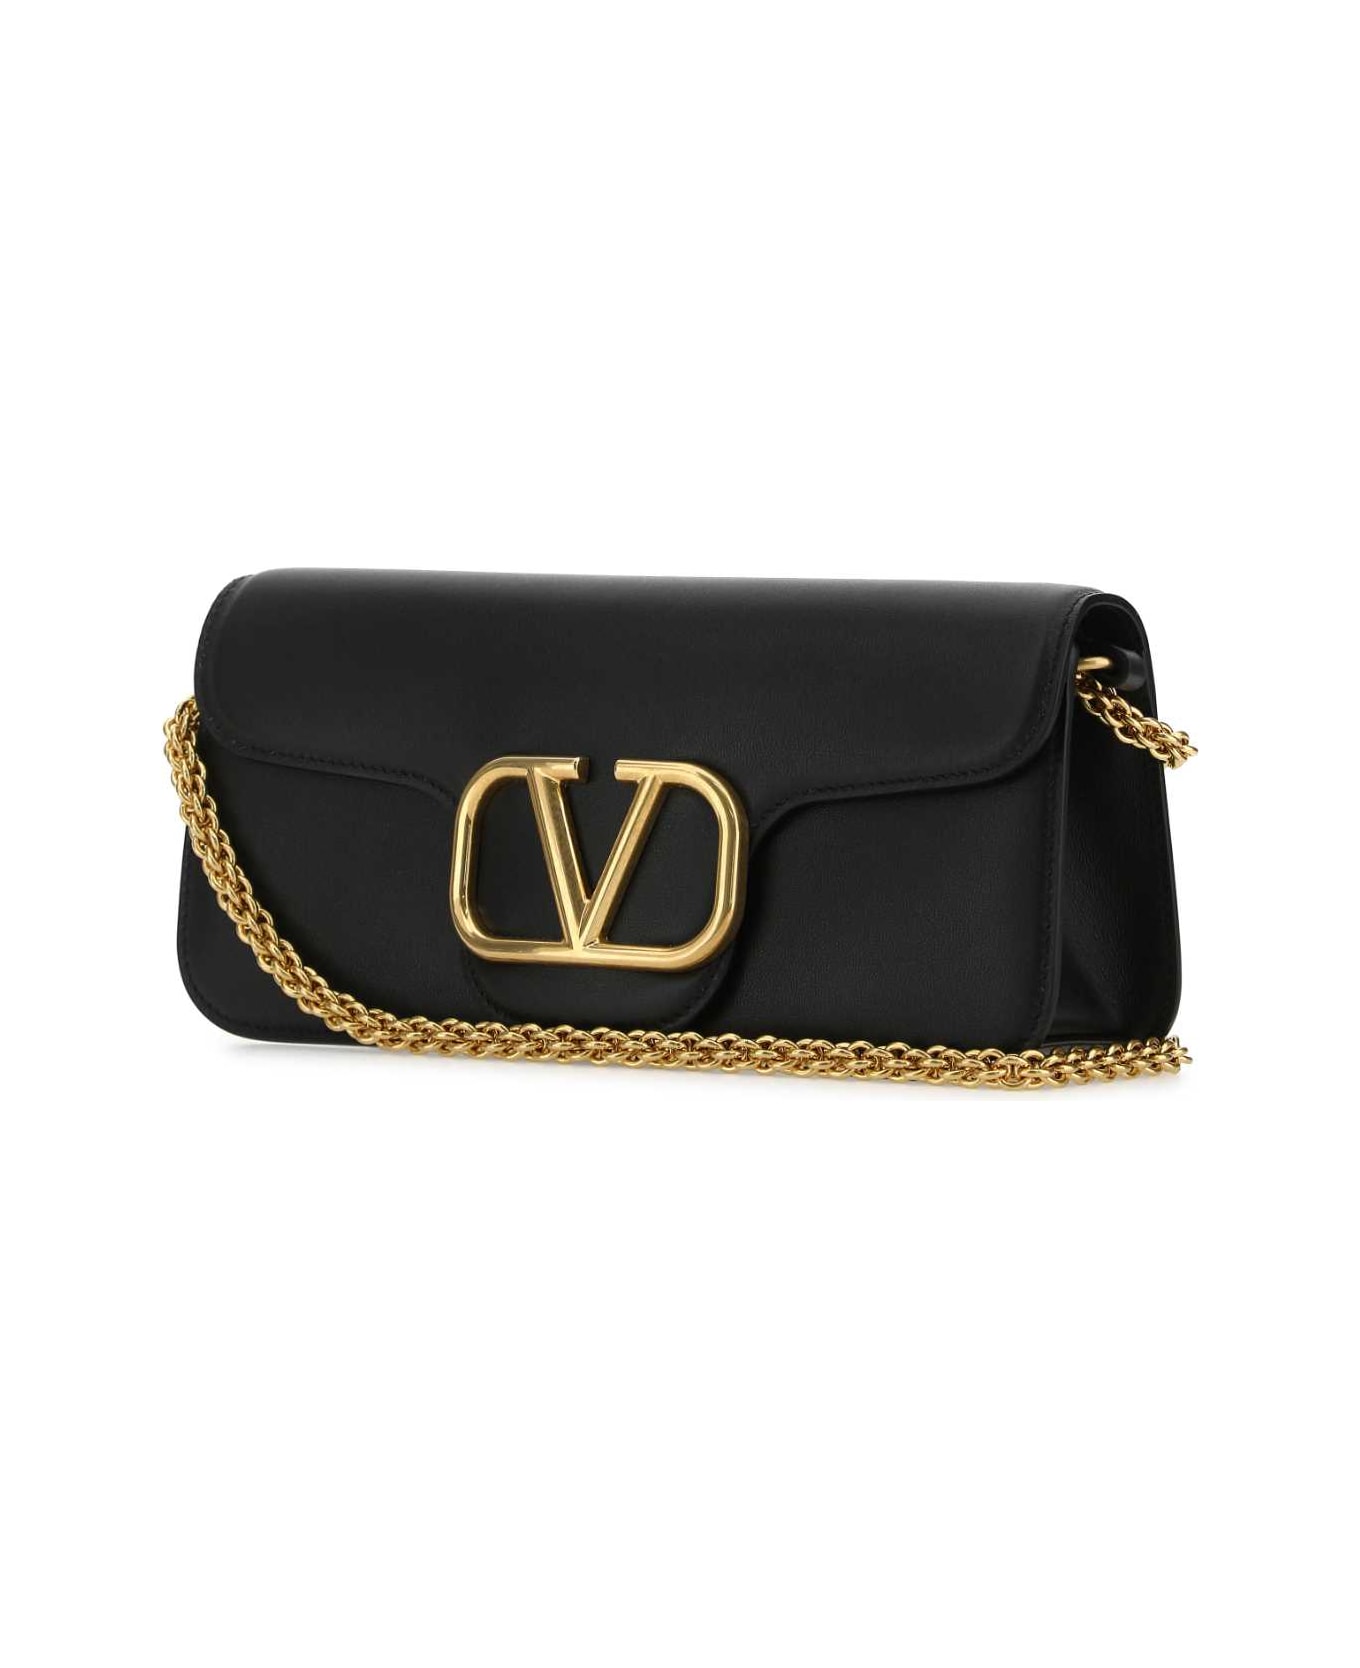 Valentino Garavani Black Leather Locã² Handbag - NERO